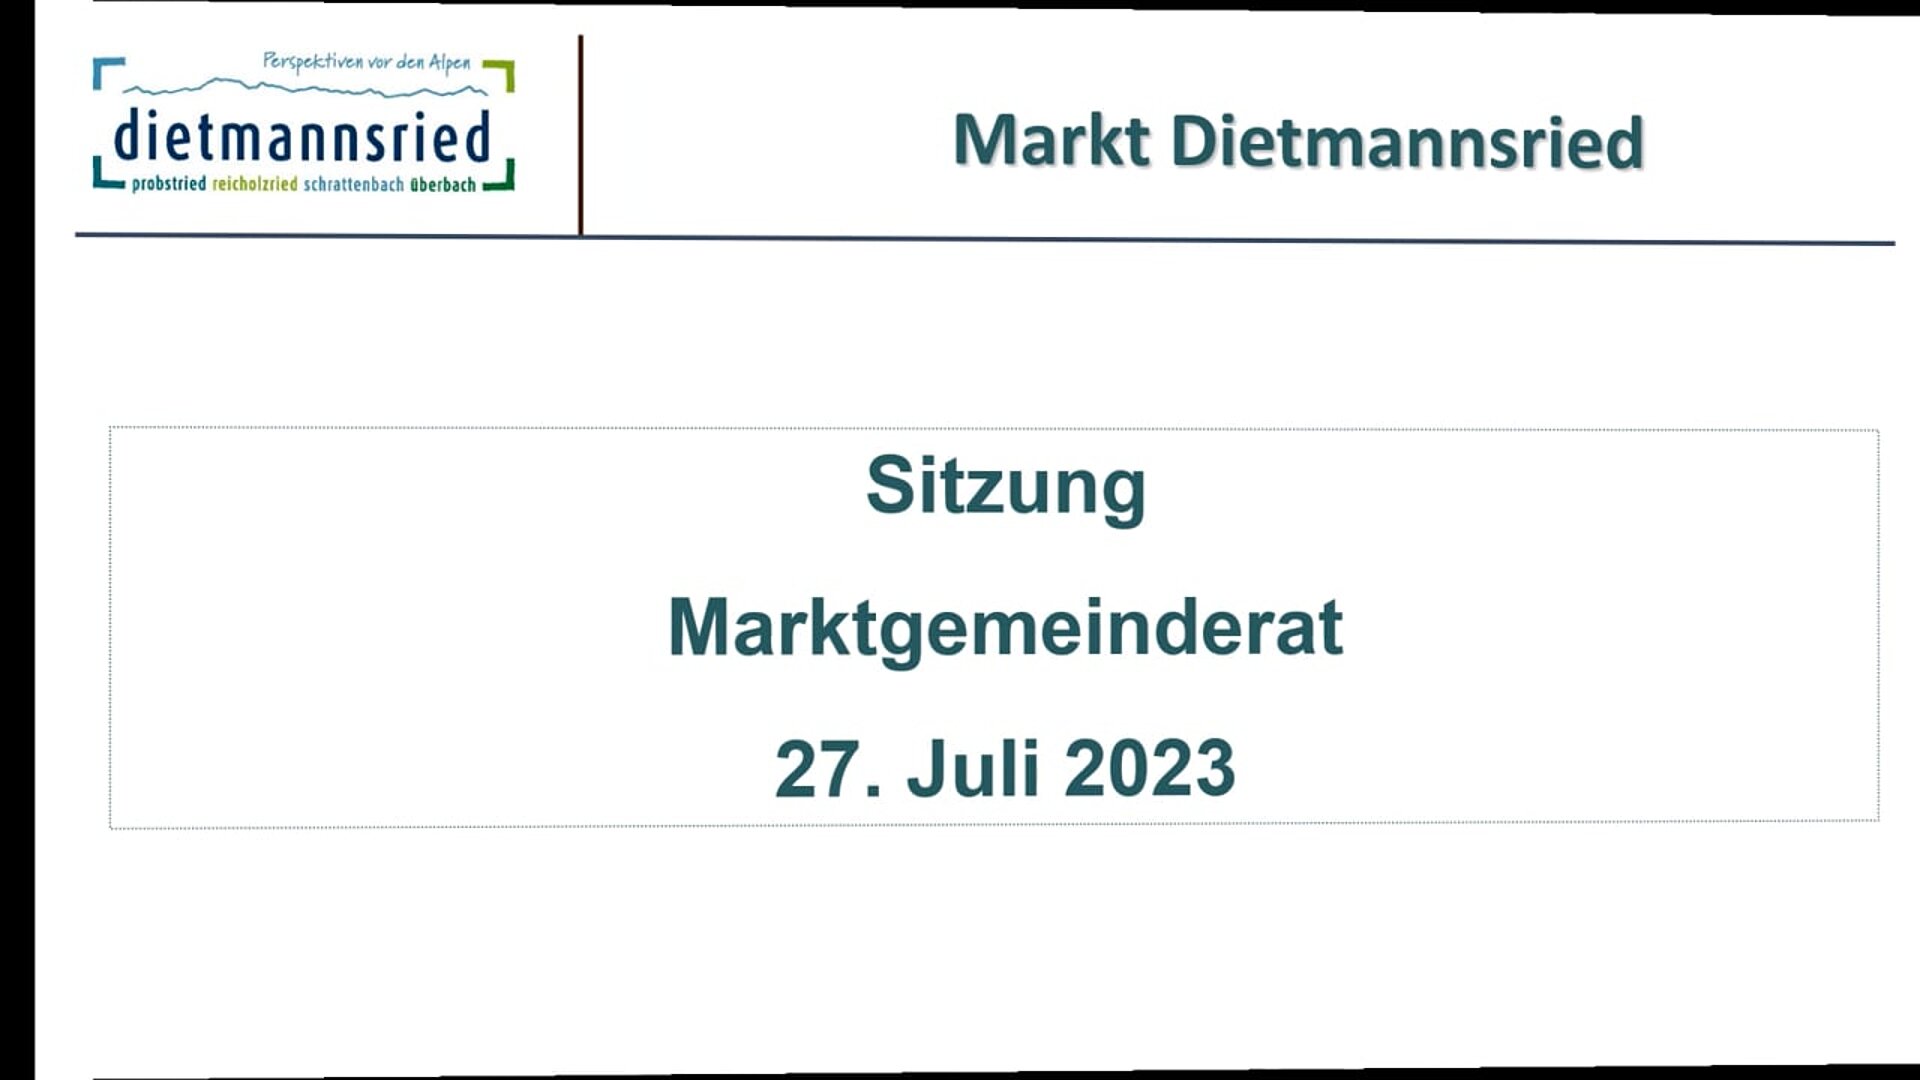 Sitzung Marktgemeinderat vom 27. Juli 2023